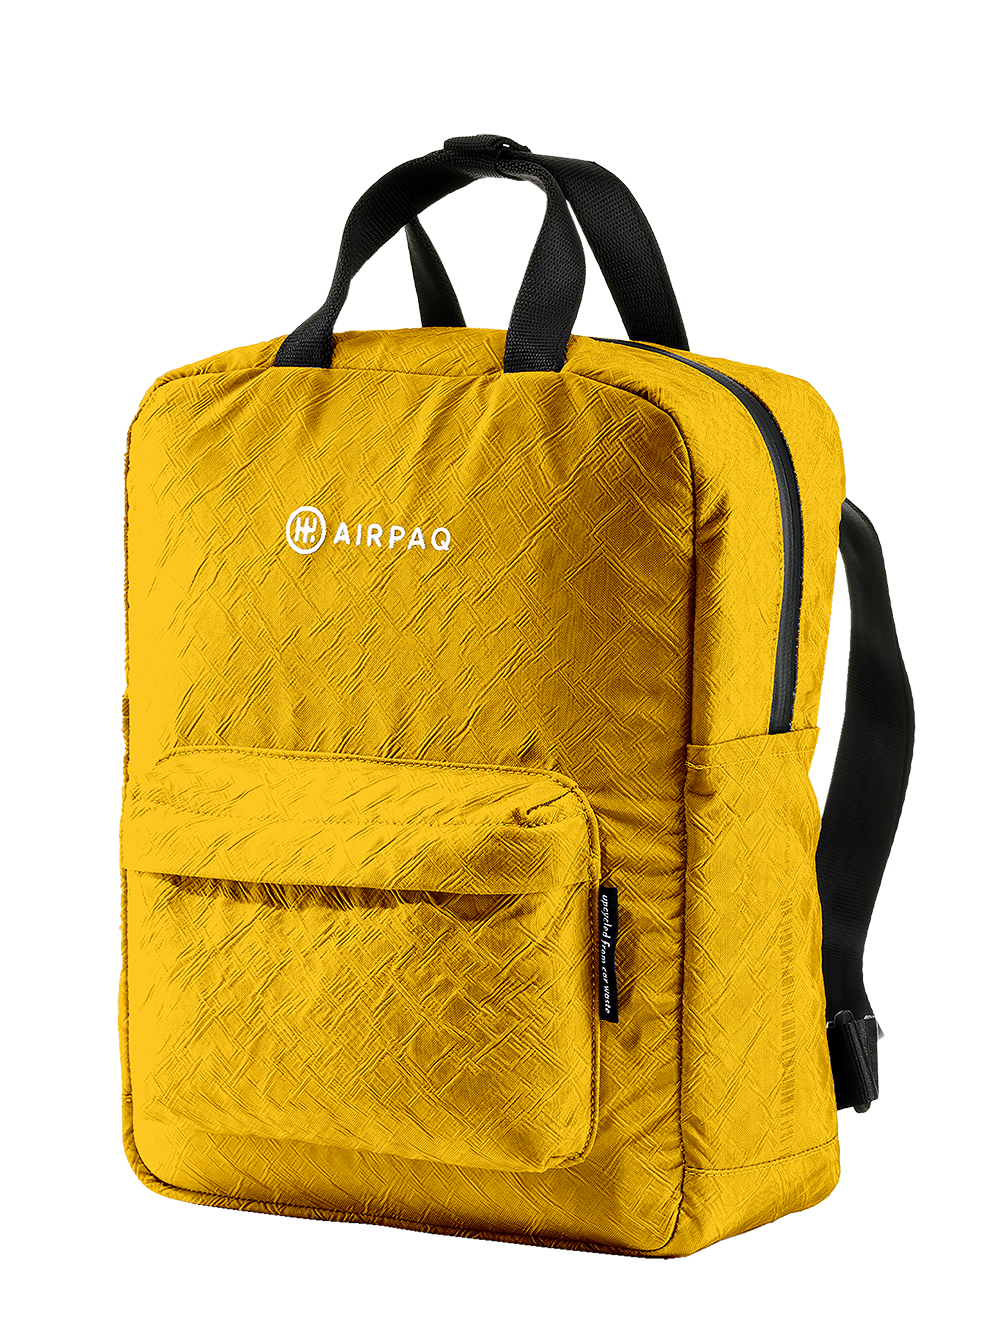 Airpaq Rucksack Qube - gelb gefärbt